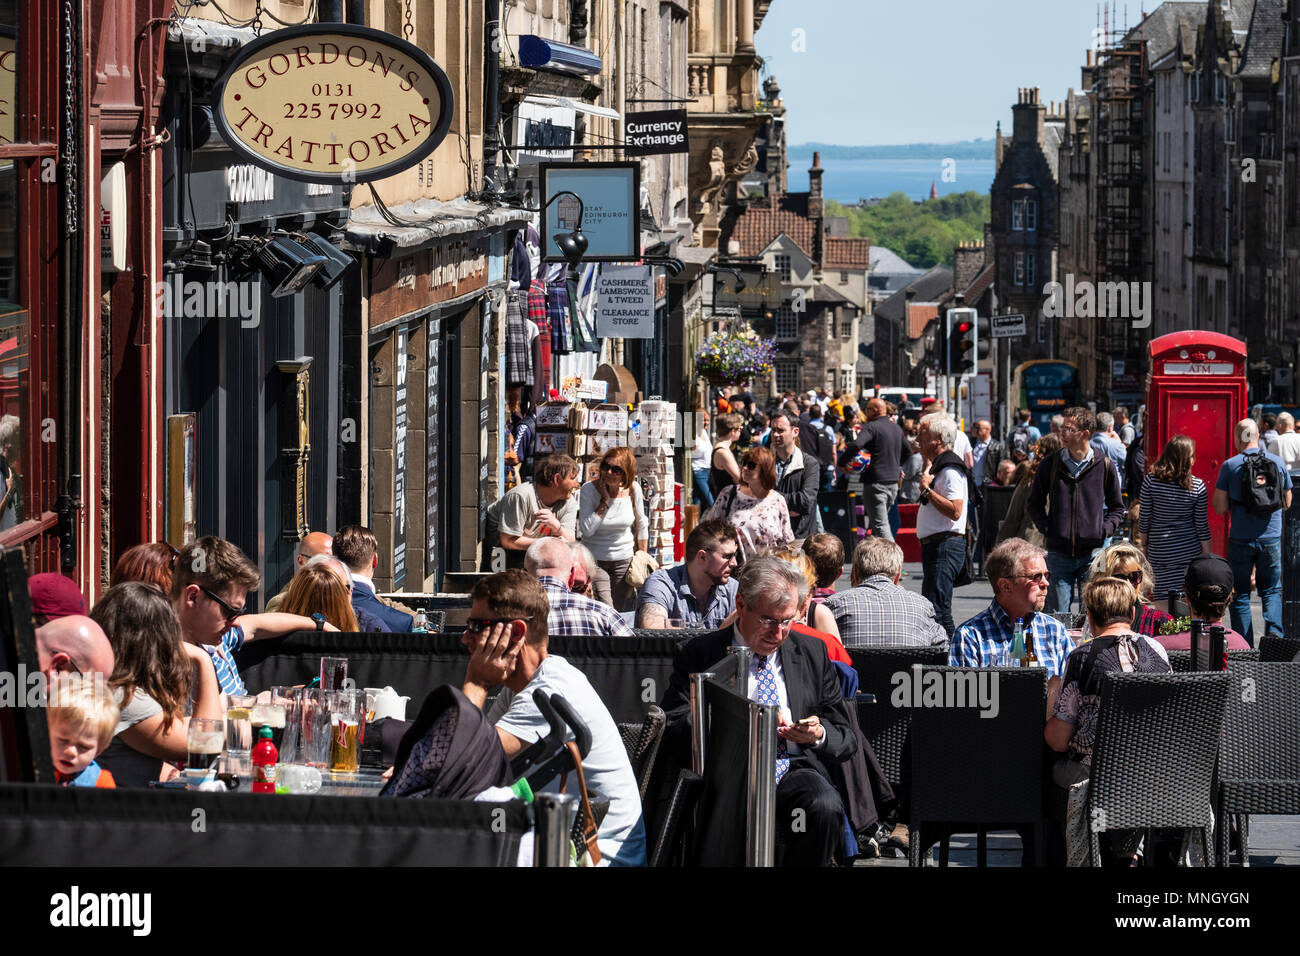 Concurridos bares y restaurantes llenos de turistas y lugareños en la Royal Mile de Edimburgo, Escocia, Reino Unido Foto de stock